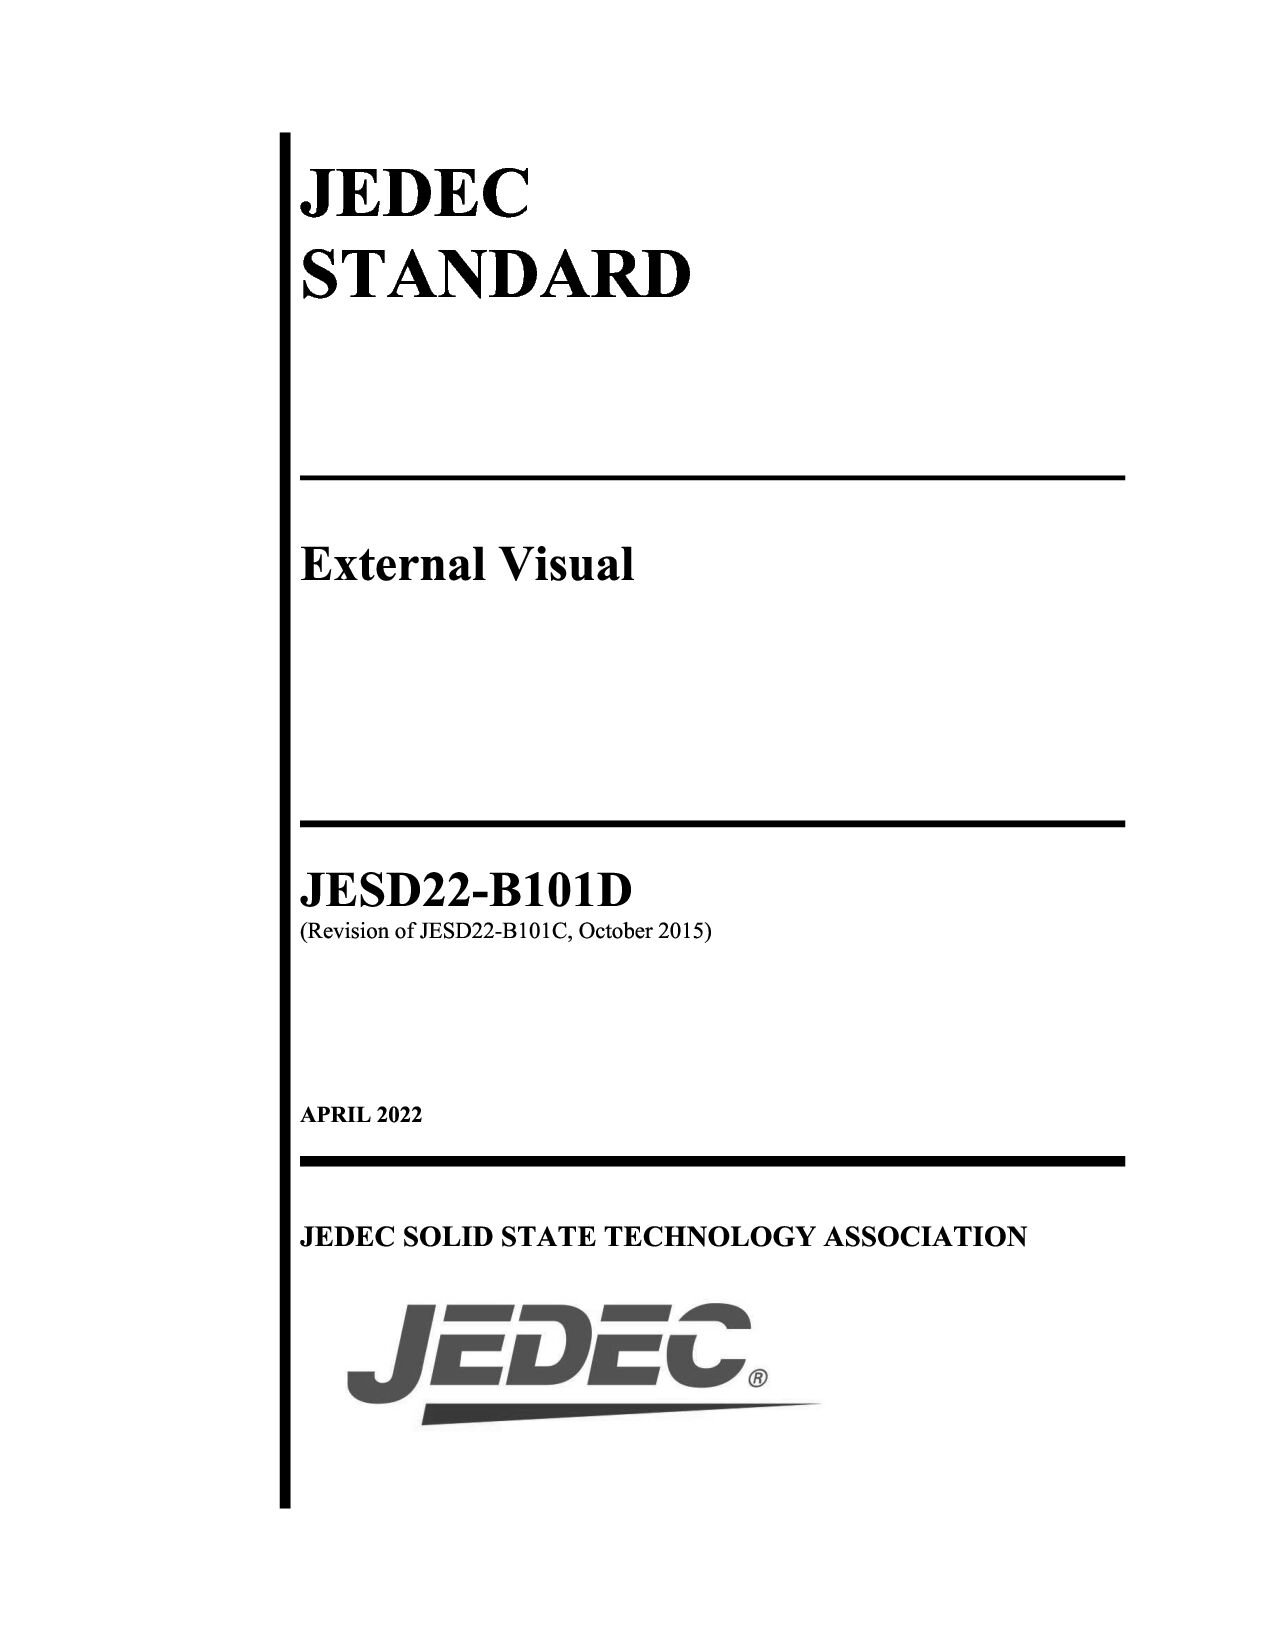 JEDEC JESD22-B101D-2022